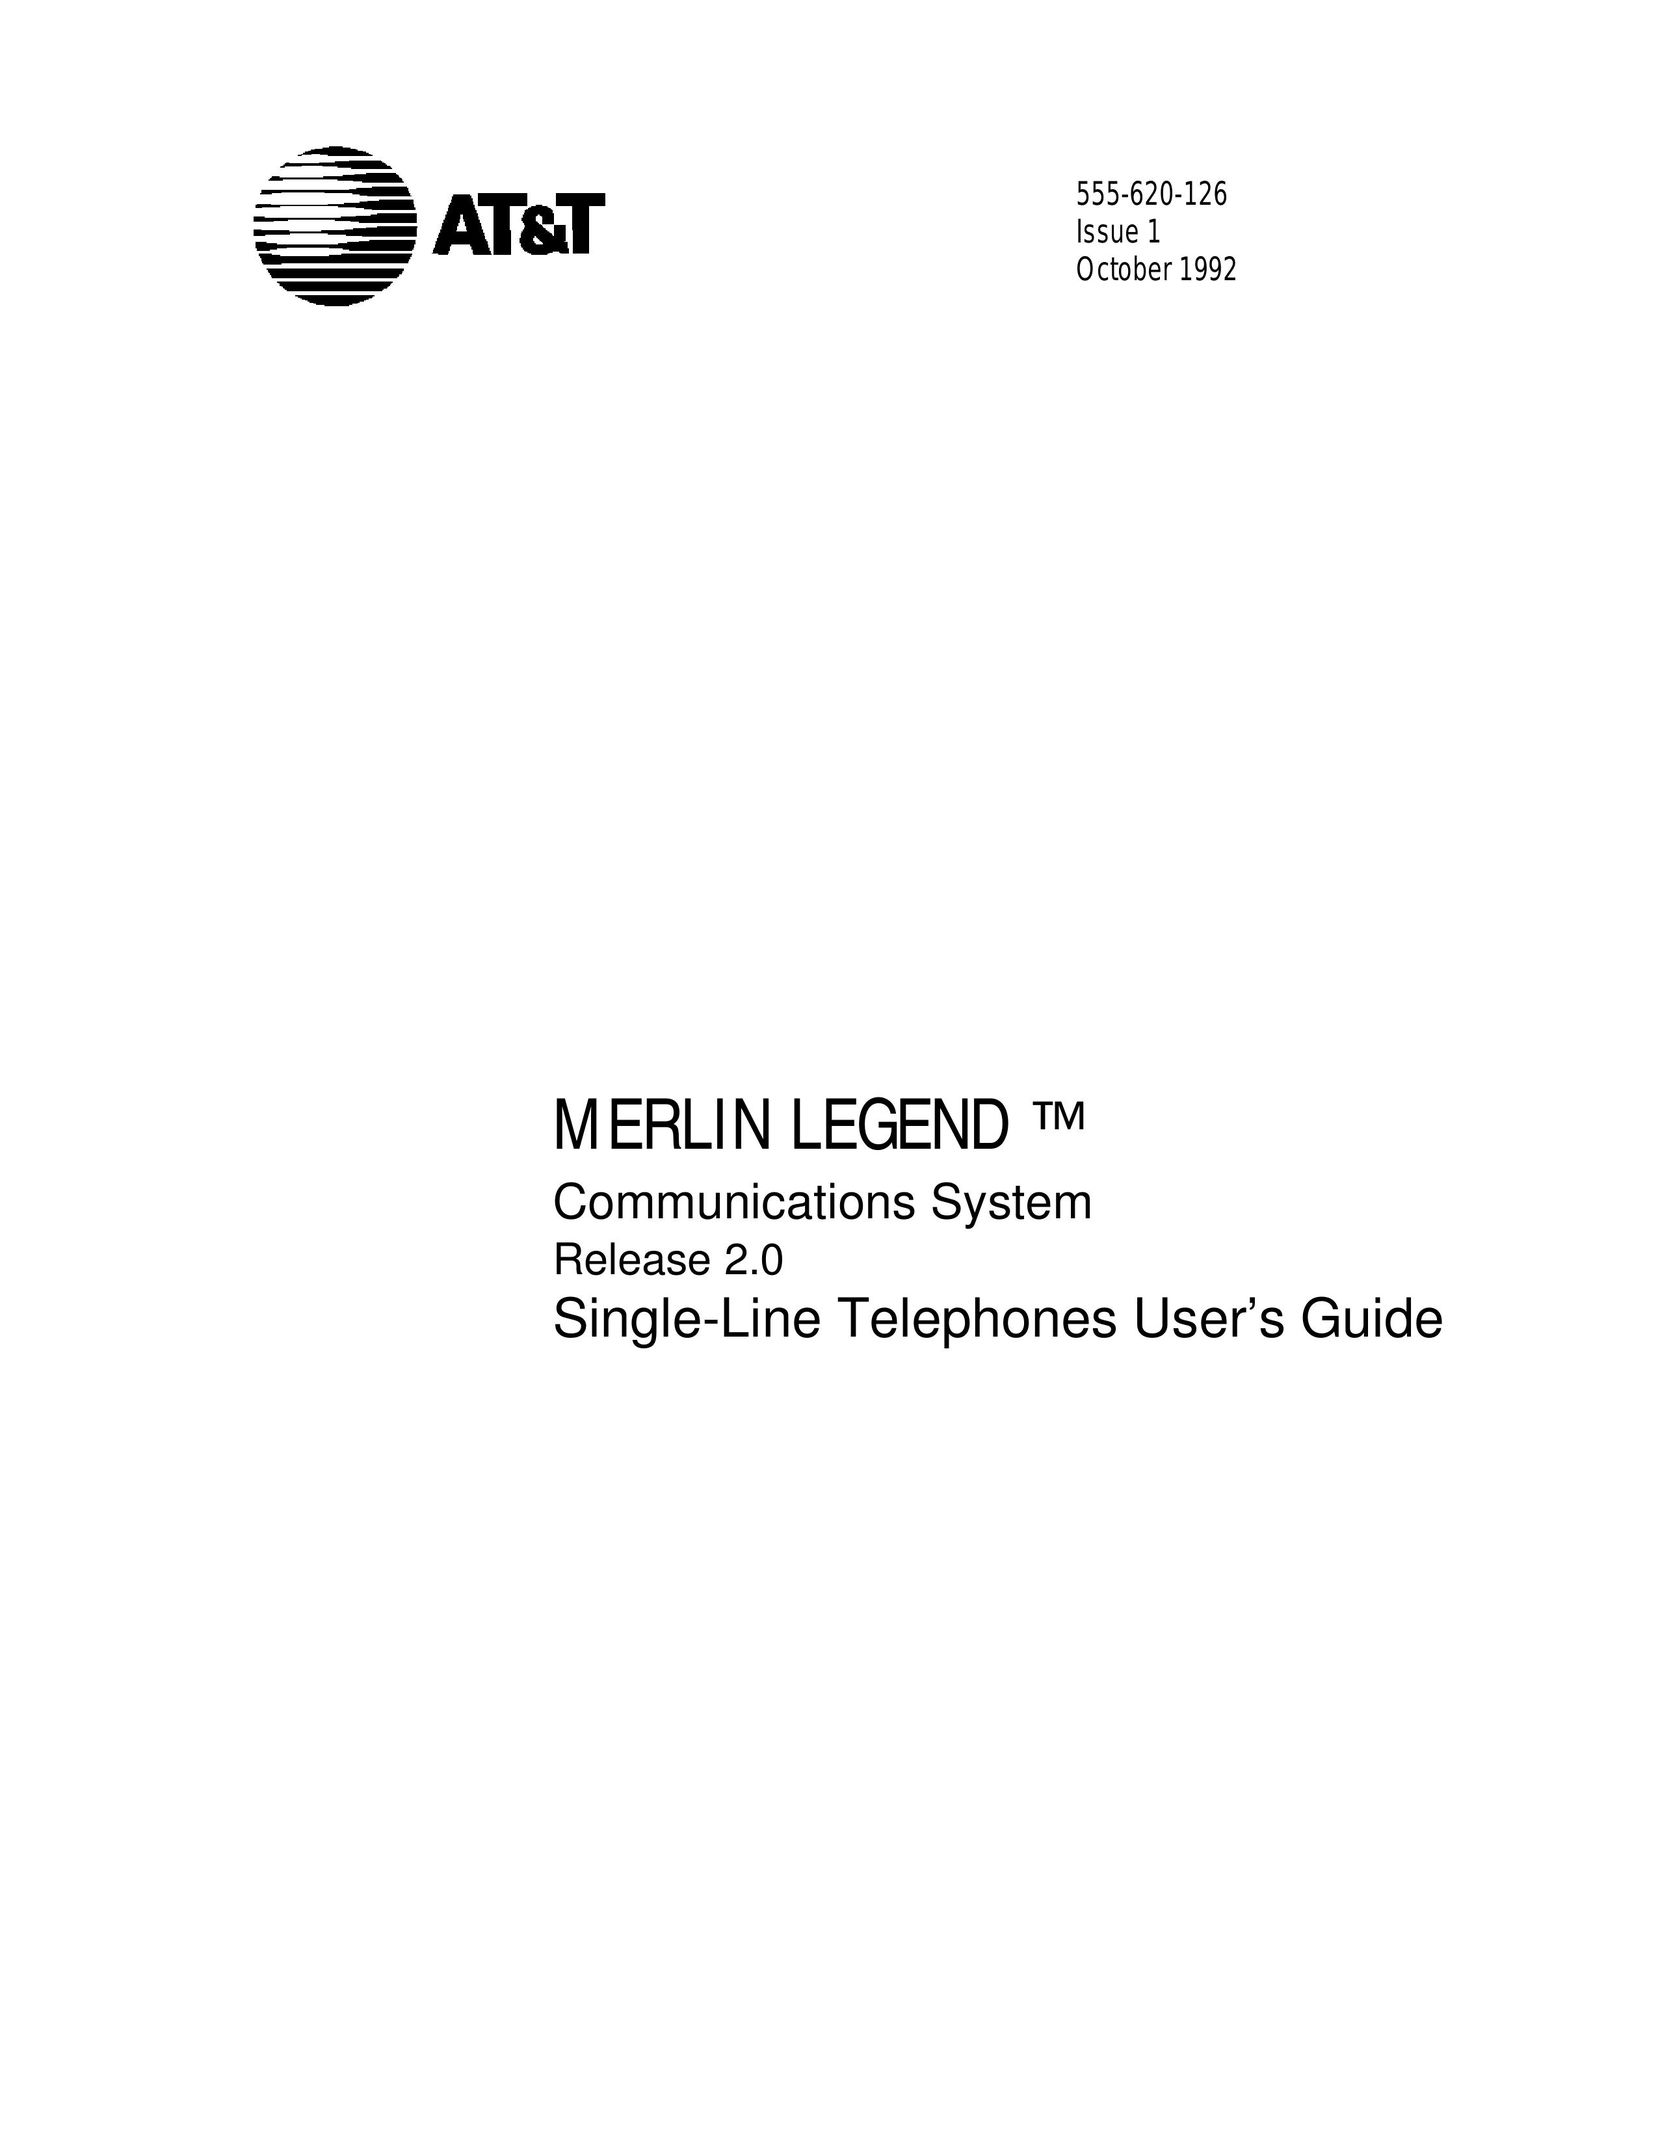 AT&T 555-620-126 Telephone User Manual